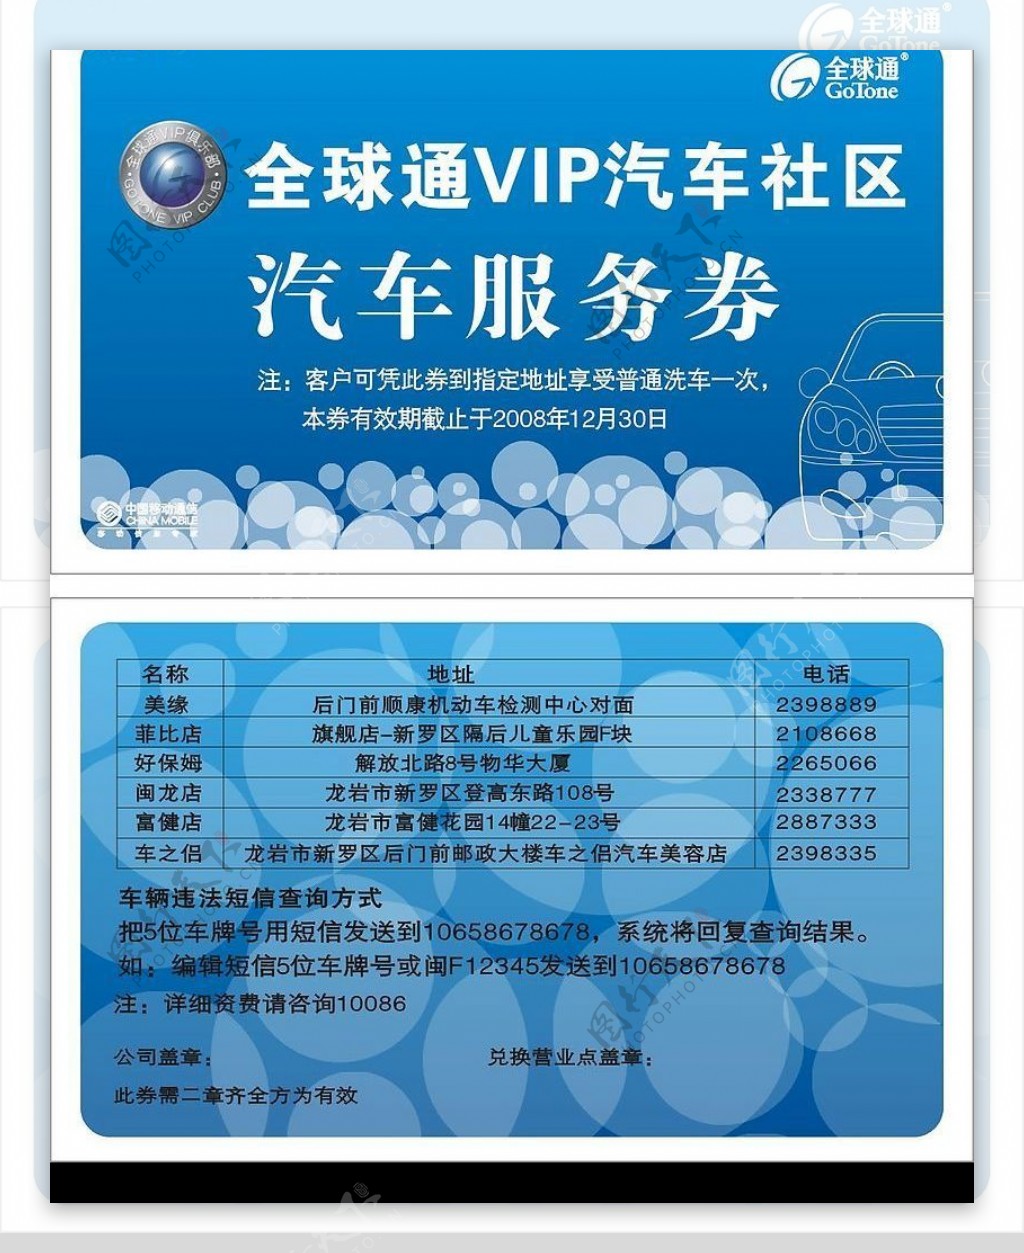 全球通VIP汽车社区汽车服务券图片